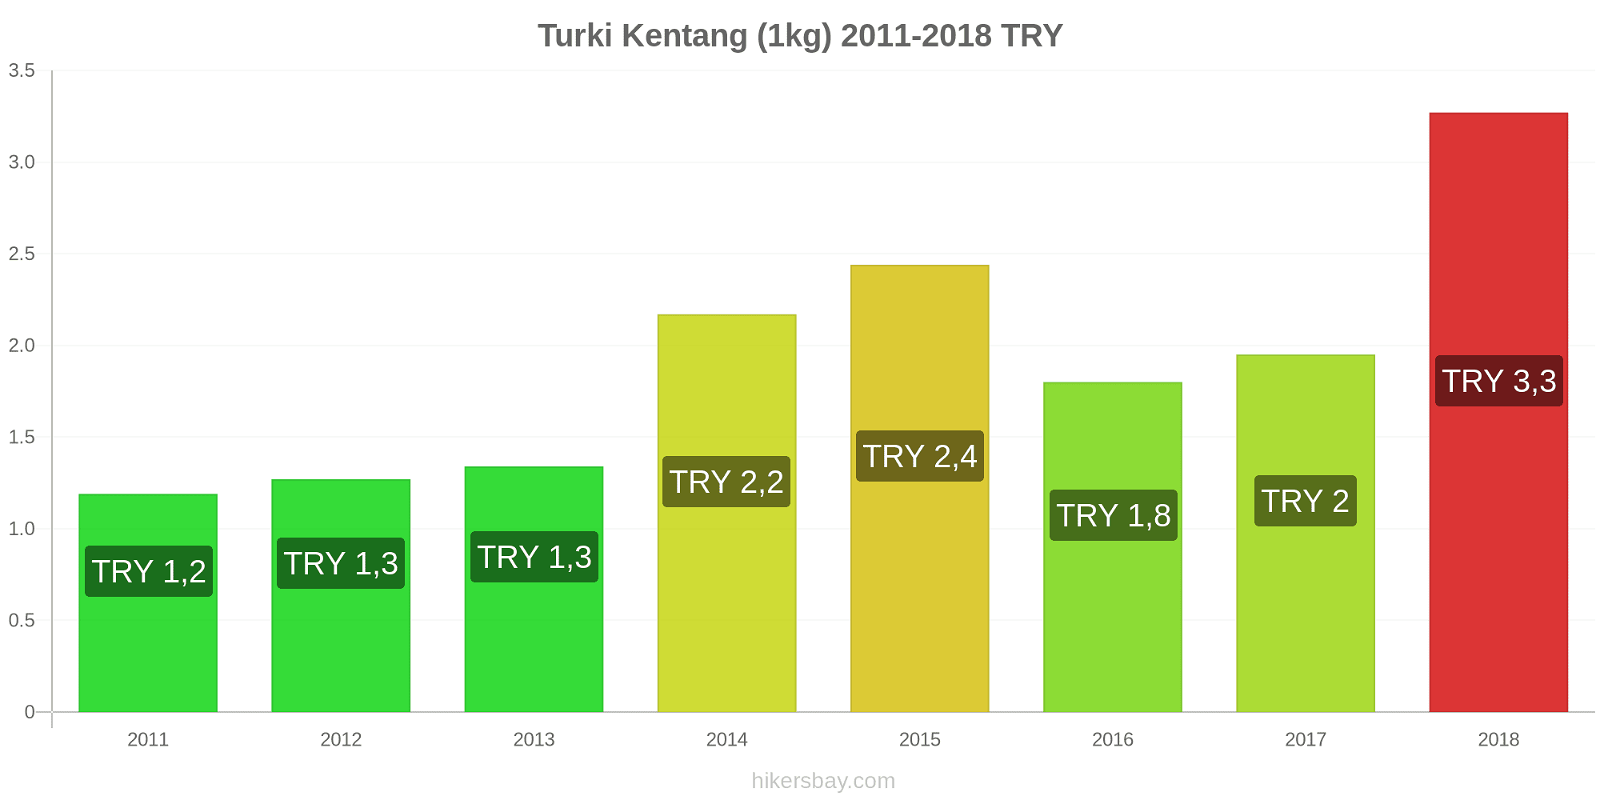 Turki perubahan harga Kentang (1kg) hikersbay.com